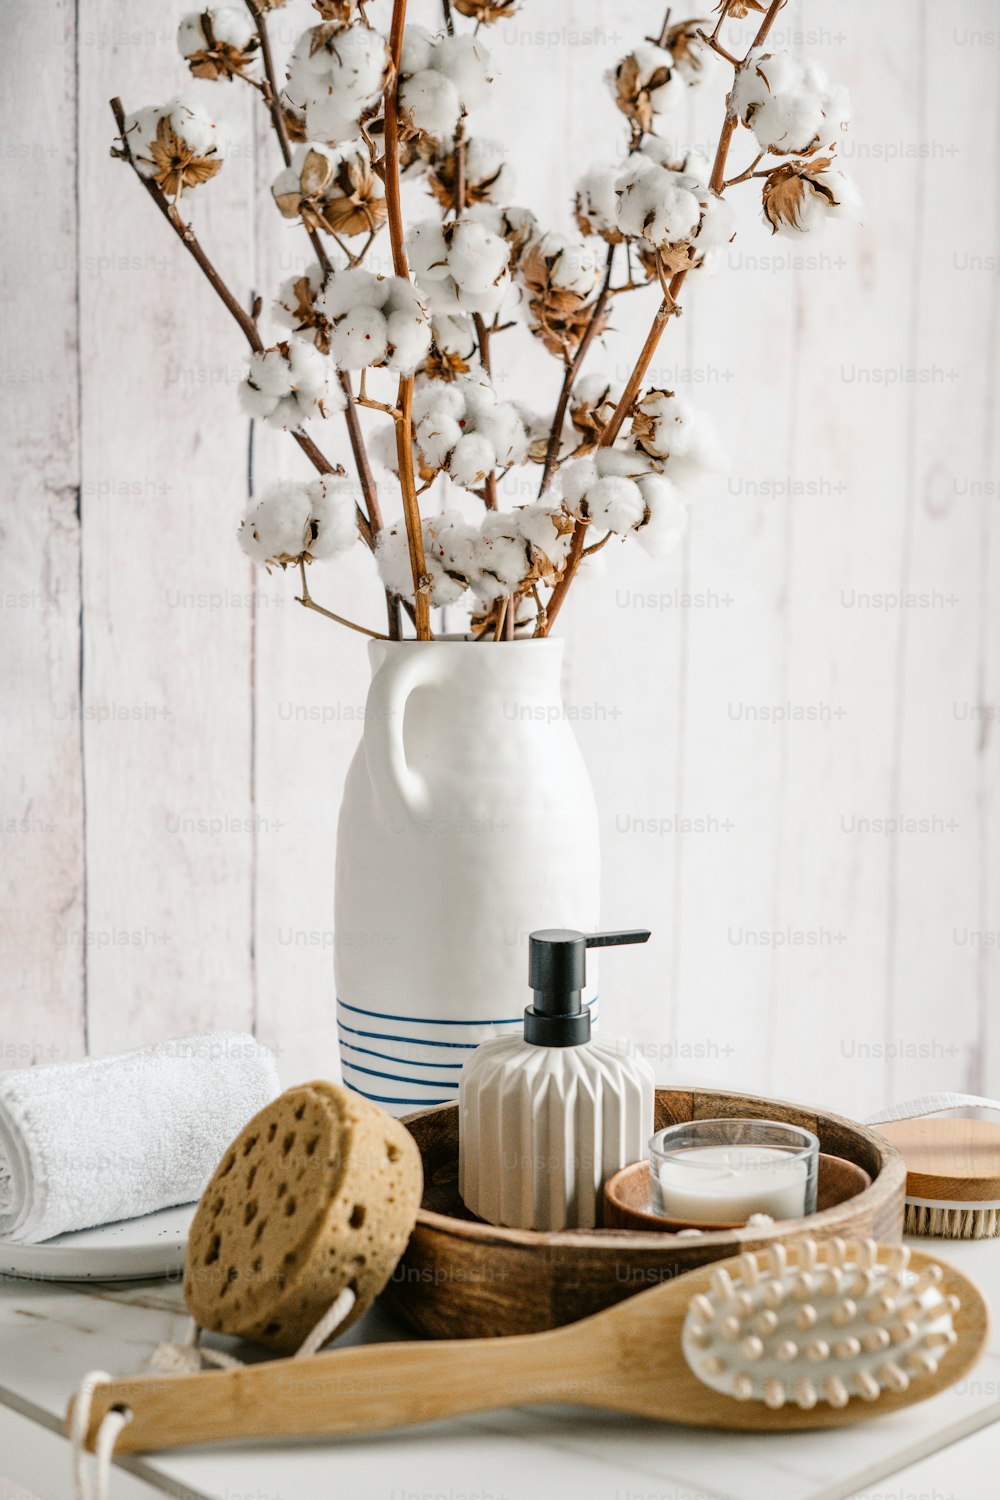 un vase blanc rempli de fleurs de coton à côté d’une brosse en bois